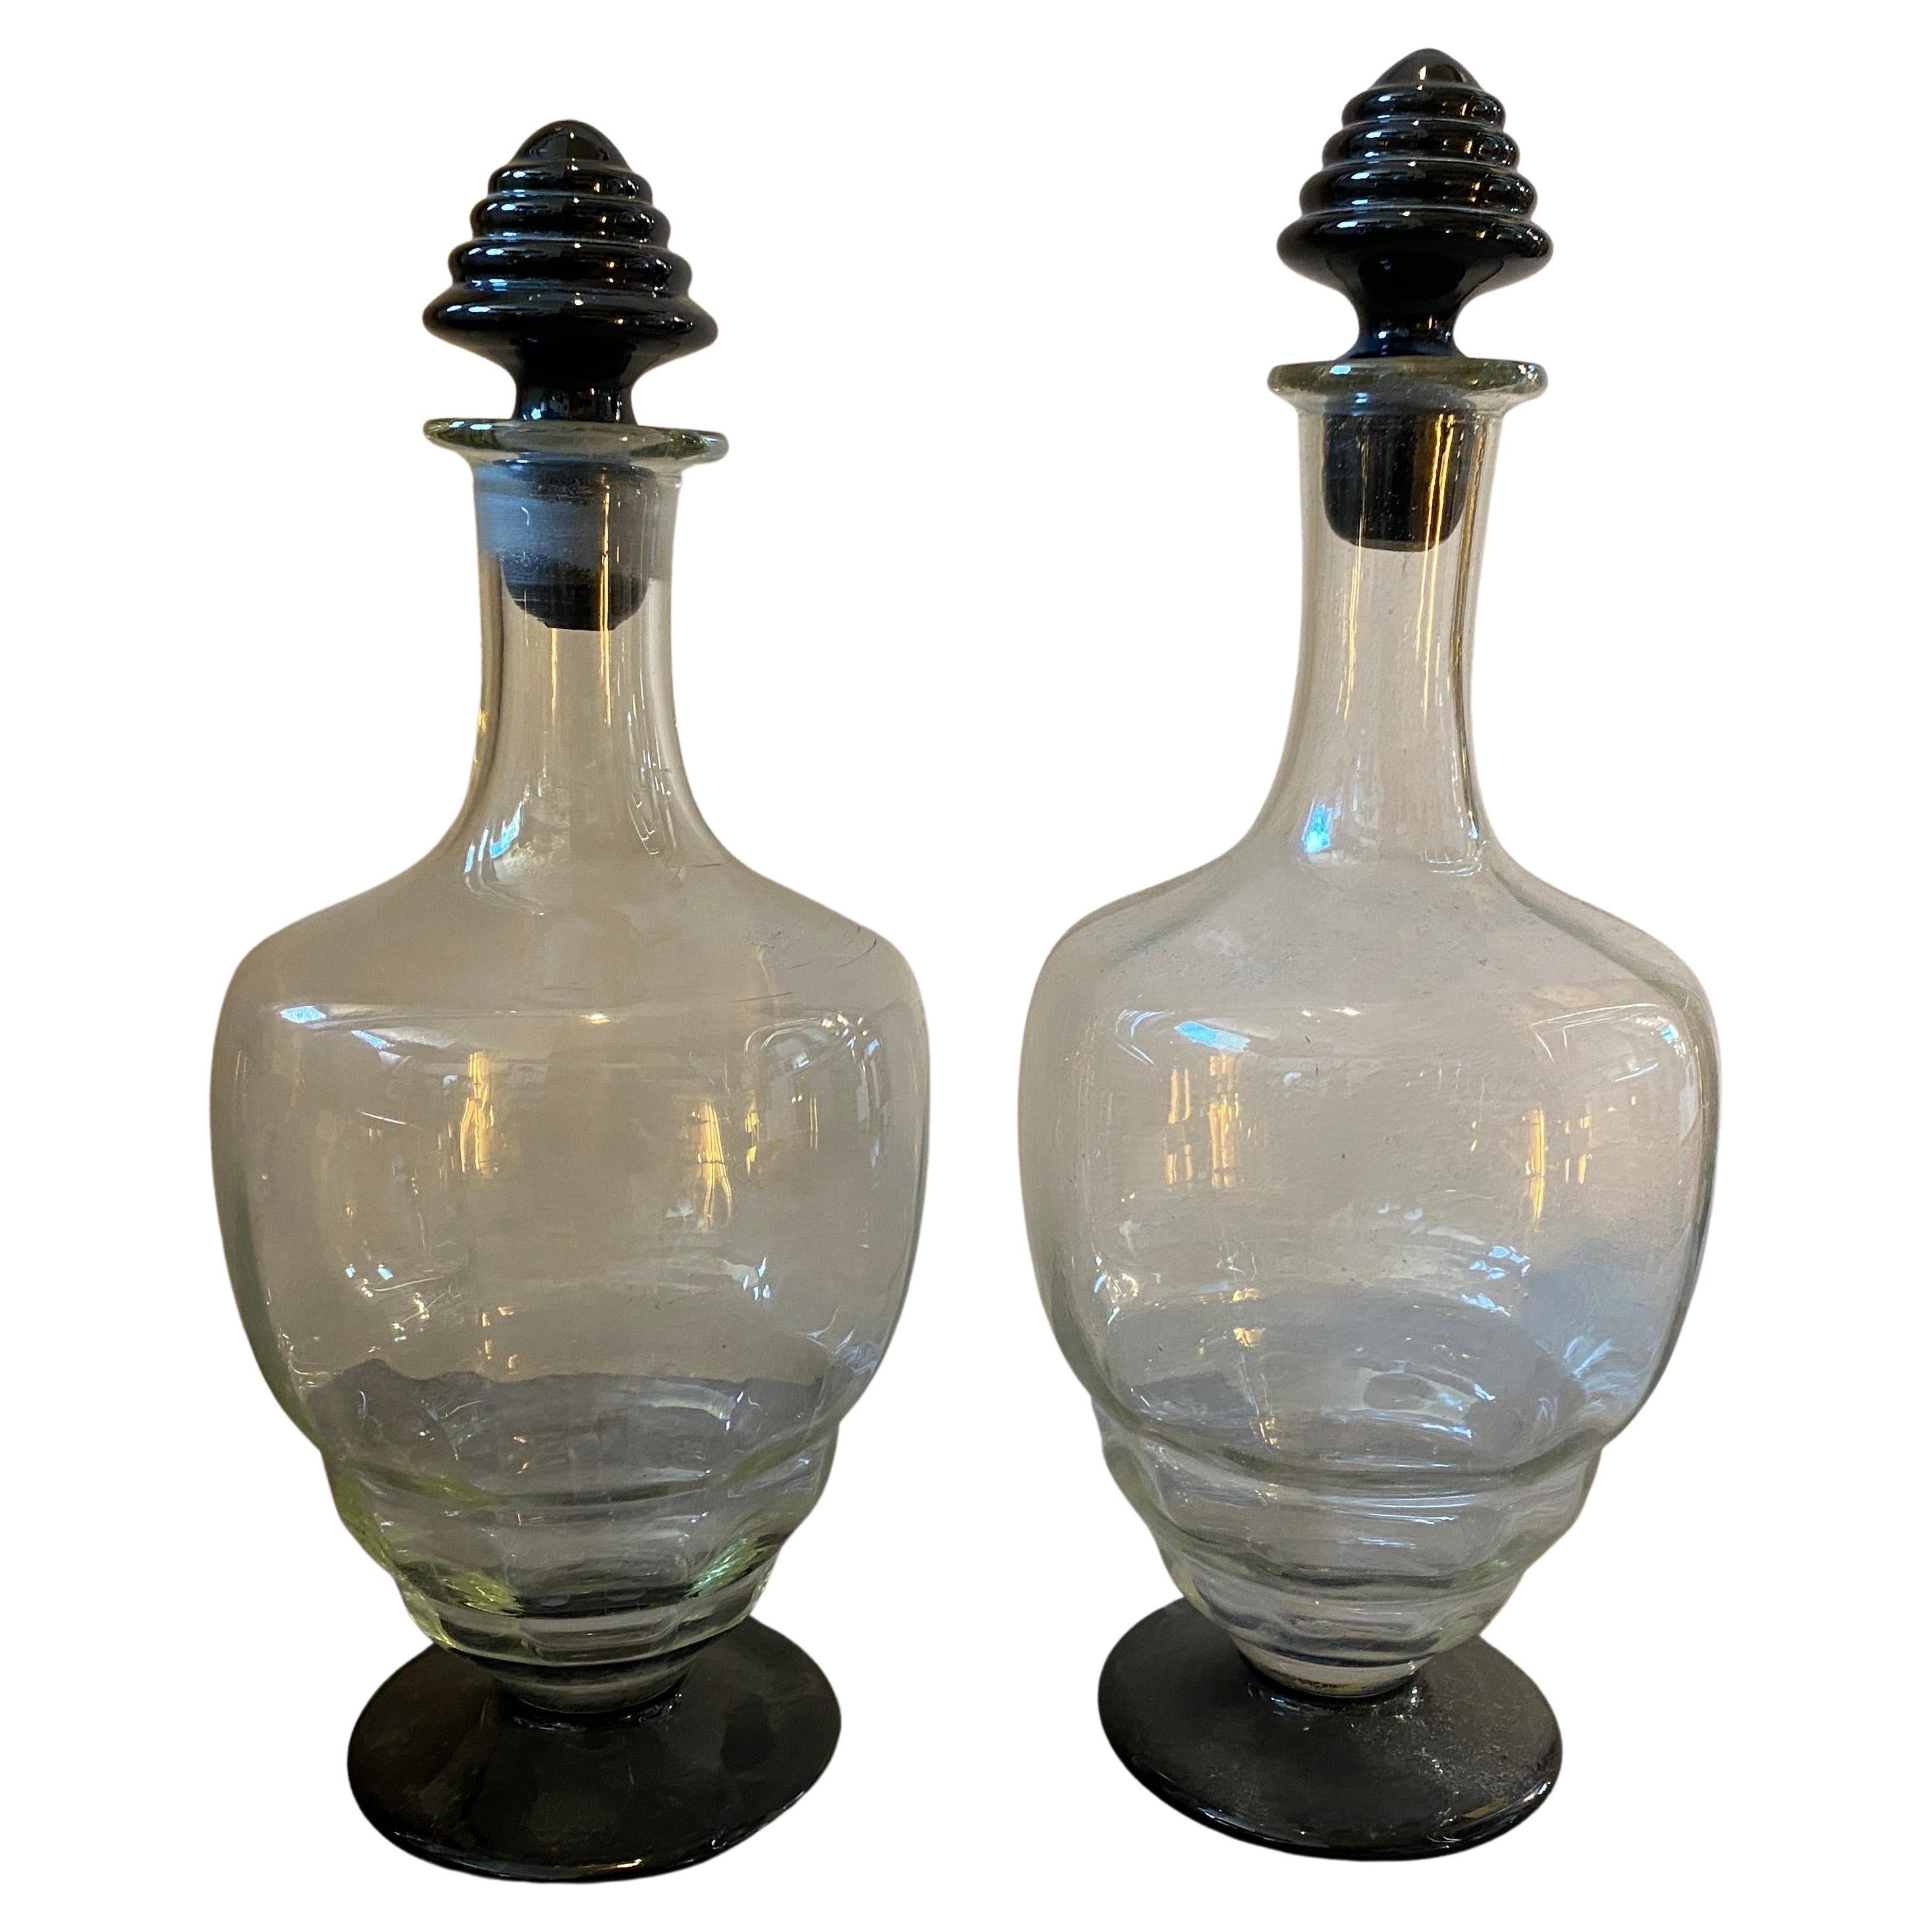 Zwei Schnapsflaschen aus klarem und schwarzem Muranoglas, die in den dreißiger Jahren in Italien im Stil von Napoleone Martinuzzi hergestellt wurden. Die eine Flasche hat eine Höhe von 31 cm, die andere eine Höhe von 29 cm. Sie sind in perfektem